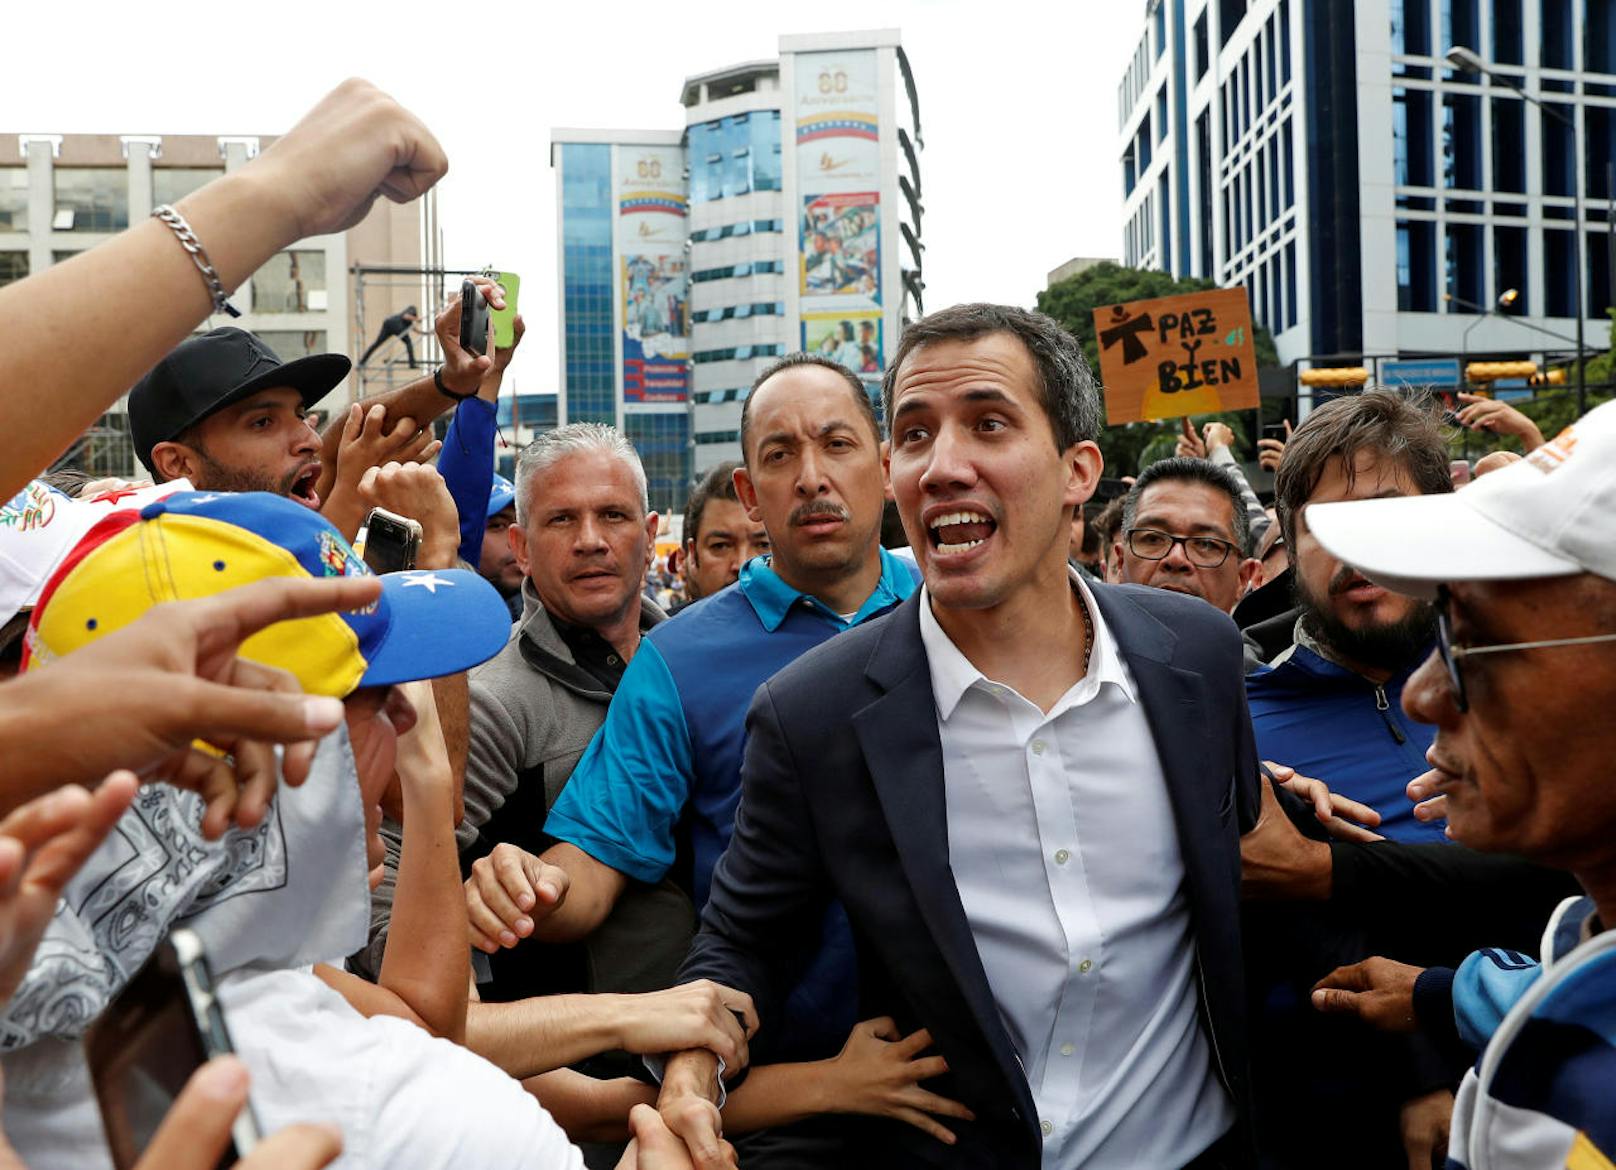 "Vor dem allmächtigen Gott gelobe ich, die Kompetenzen der Exekutive als Interims-Präsident von Venezuela zu übernehmen", sagte Guaidó an einer Kundgebung in Caracas.